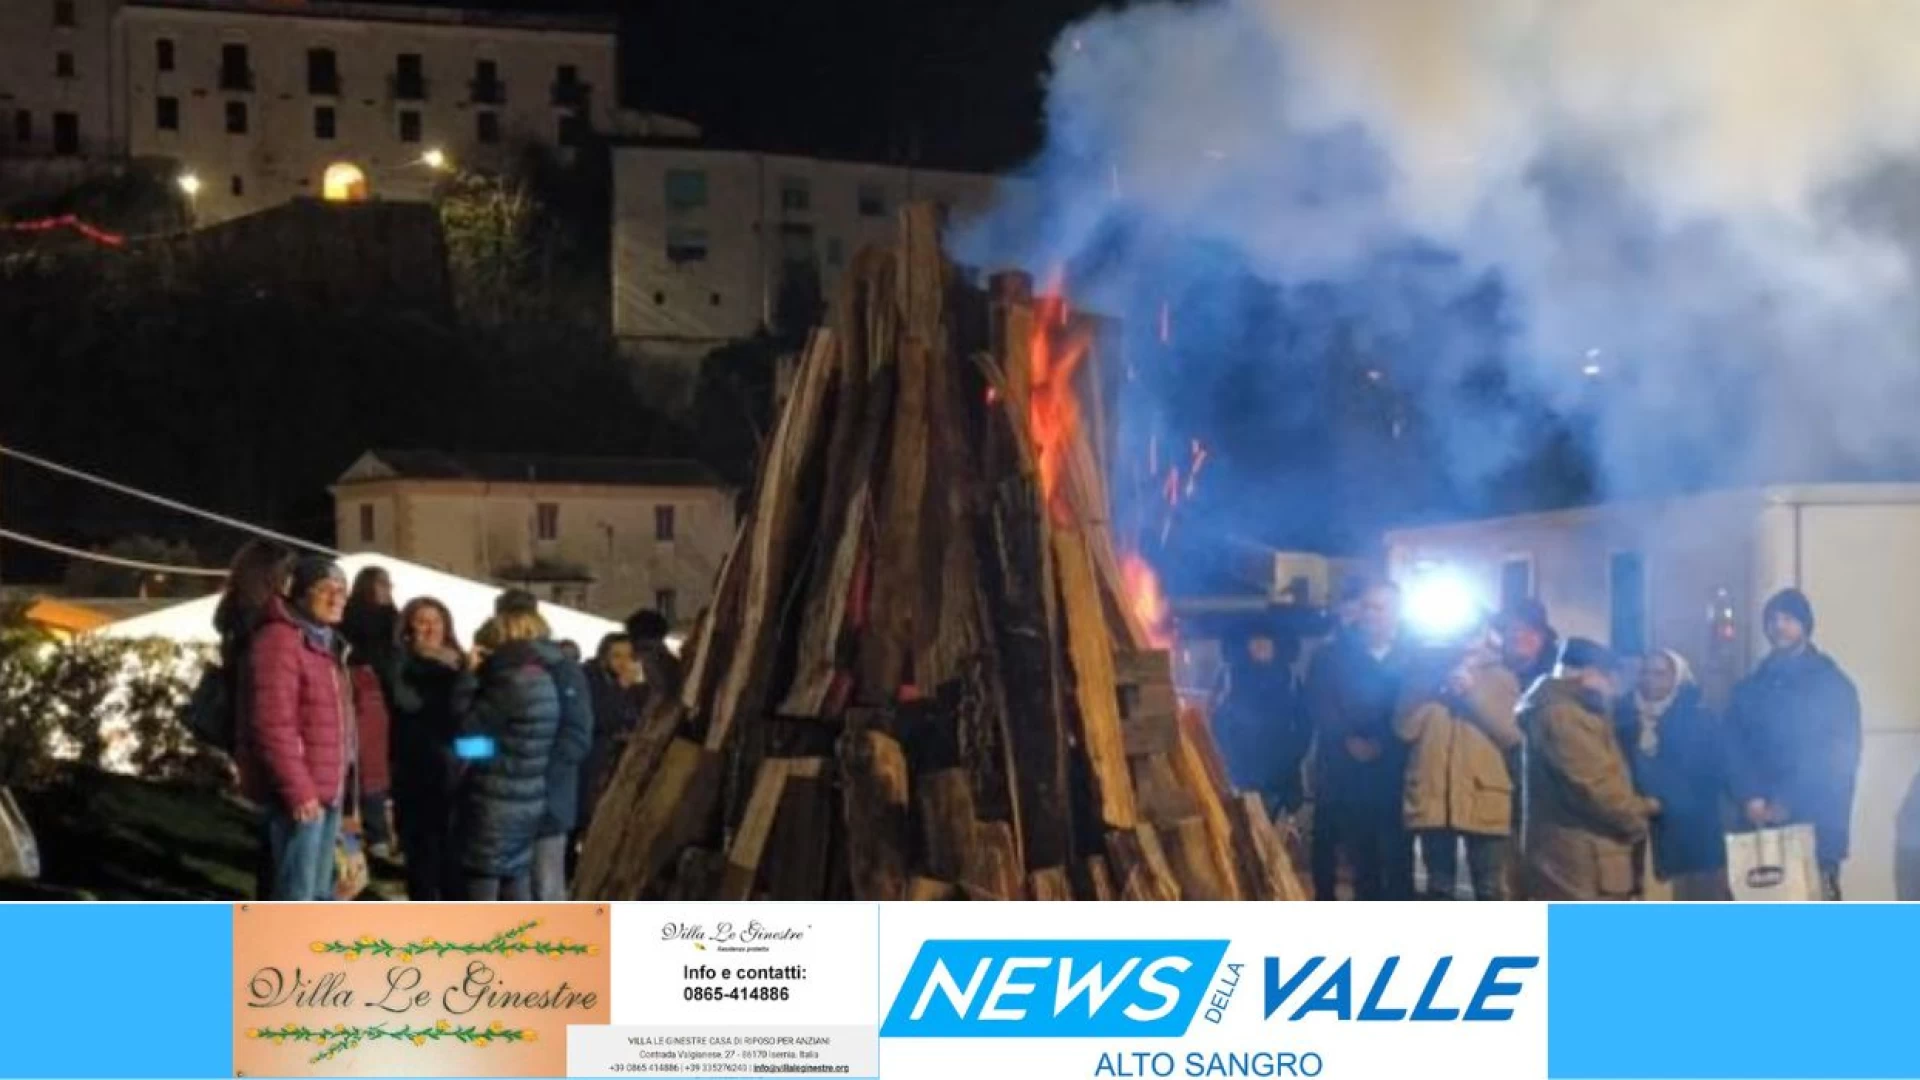 Tradizione, storia e cultura si uniscono a Colli a Volturno in occasione di Sant’Antonio Abate. Il fuoco che riaccende la storia. Guarda la clip video